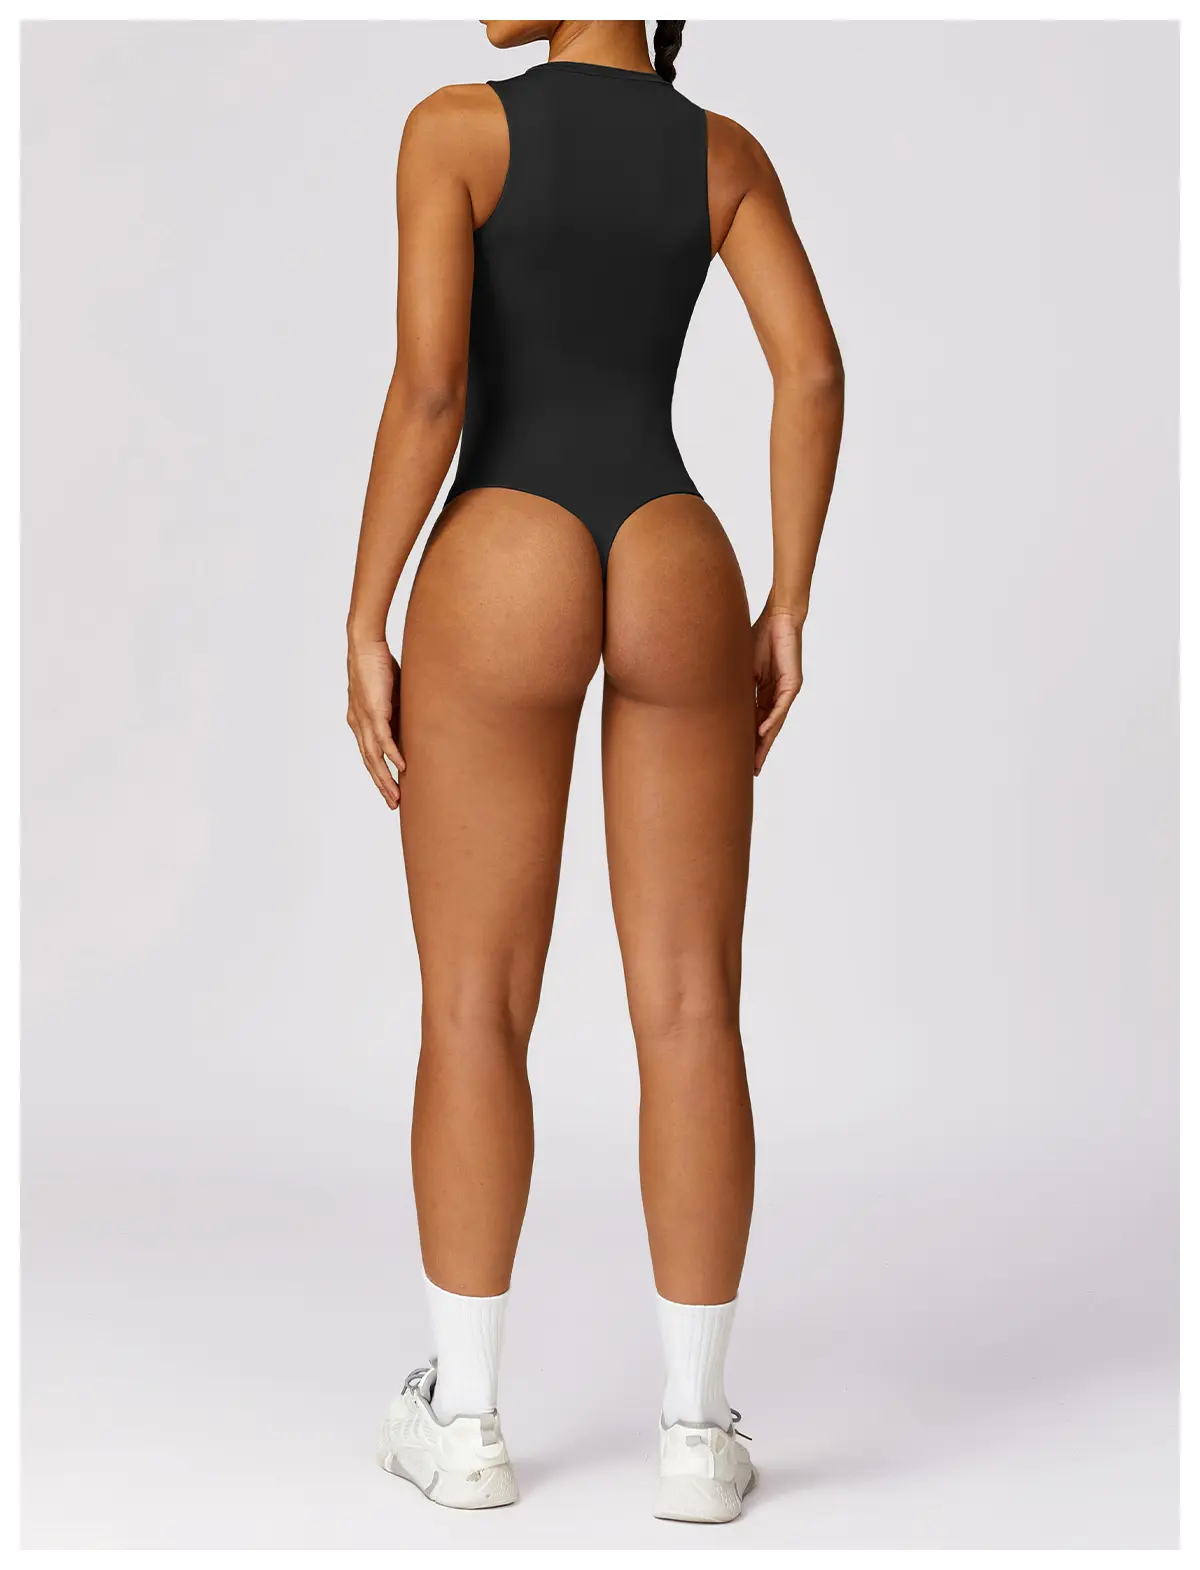 YanRuo set pakaian kebugaran wanita seksi, Jumpsuit olahraga punggung terbuka, pakaian kebugaran Yoga seksi